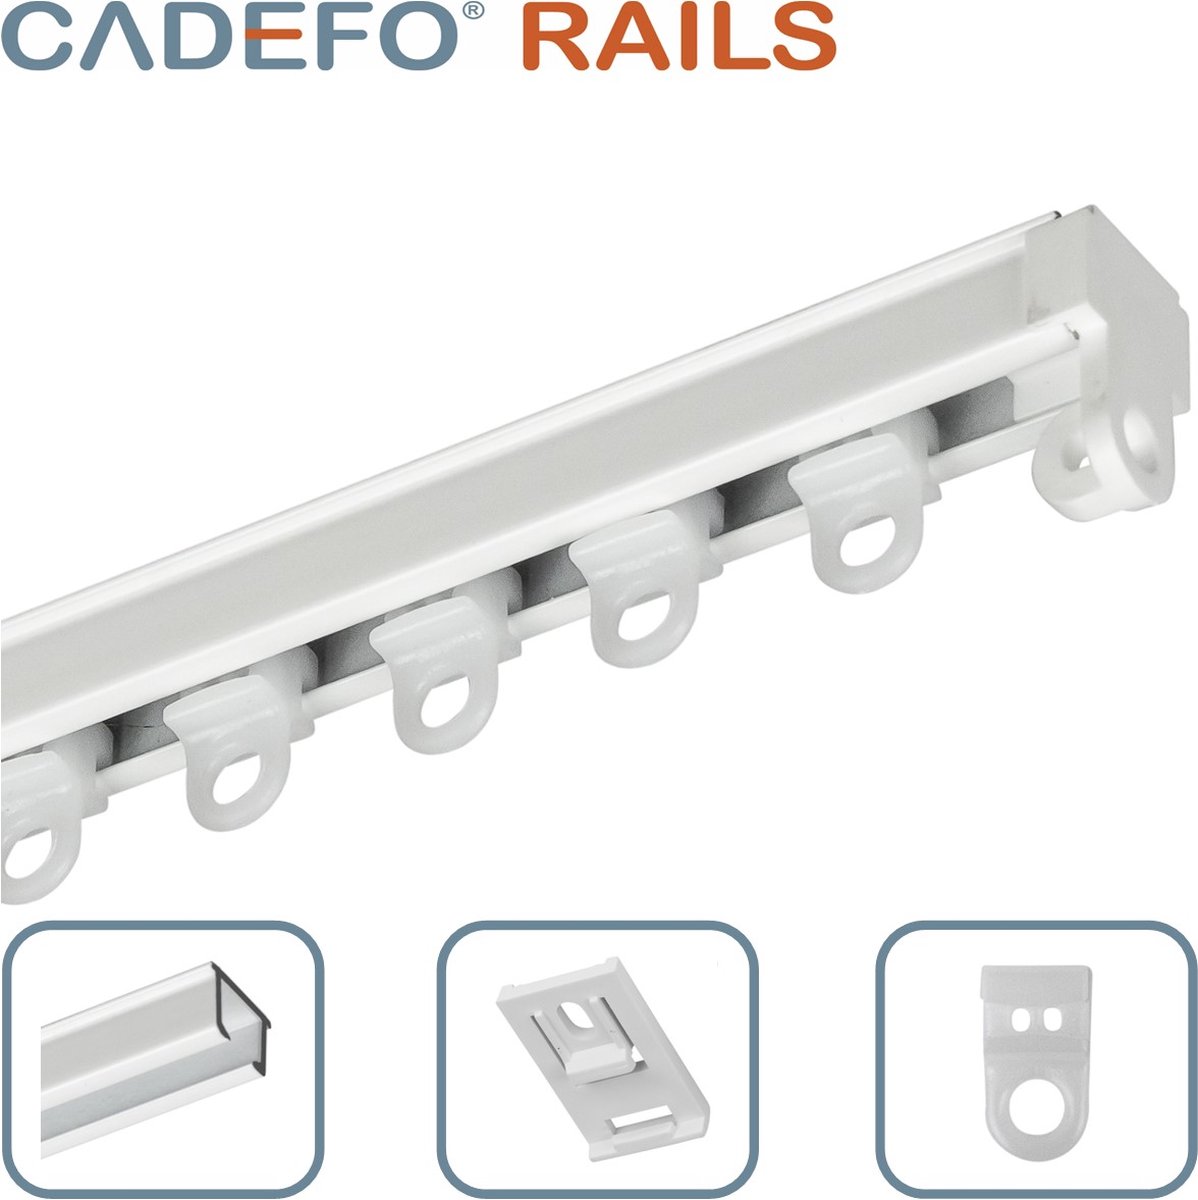 CADEFO RAILS (301 - 350 cm) Gordijnrails - Compleet op maat! - UIT 1 STUK - Leverbaar tot 6 meter - Plafondbevestiging - Lengte 329 cm